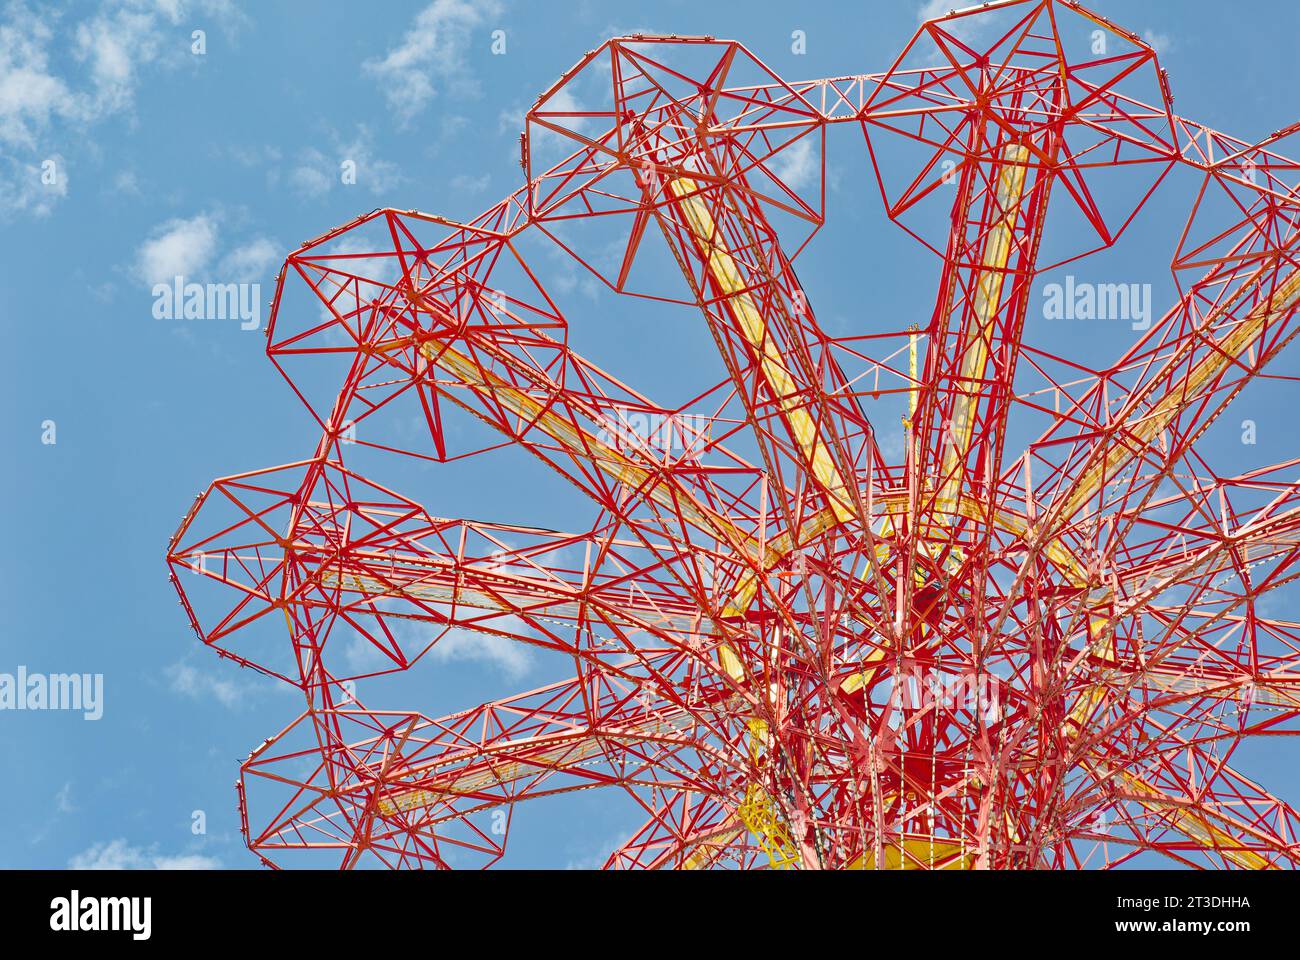 Parachutes disparus depuis longtemps, la tour parachute Jump domine toujours la Skyline de Coney Island. Le repère rouge vif est éclairé la nuit. Banque D'Images